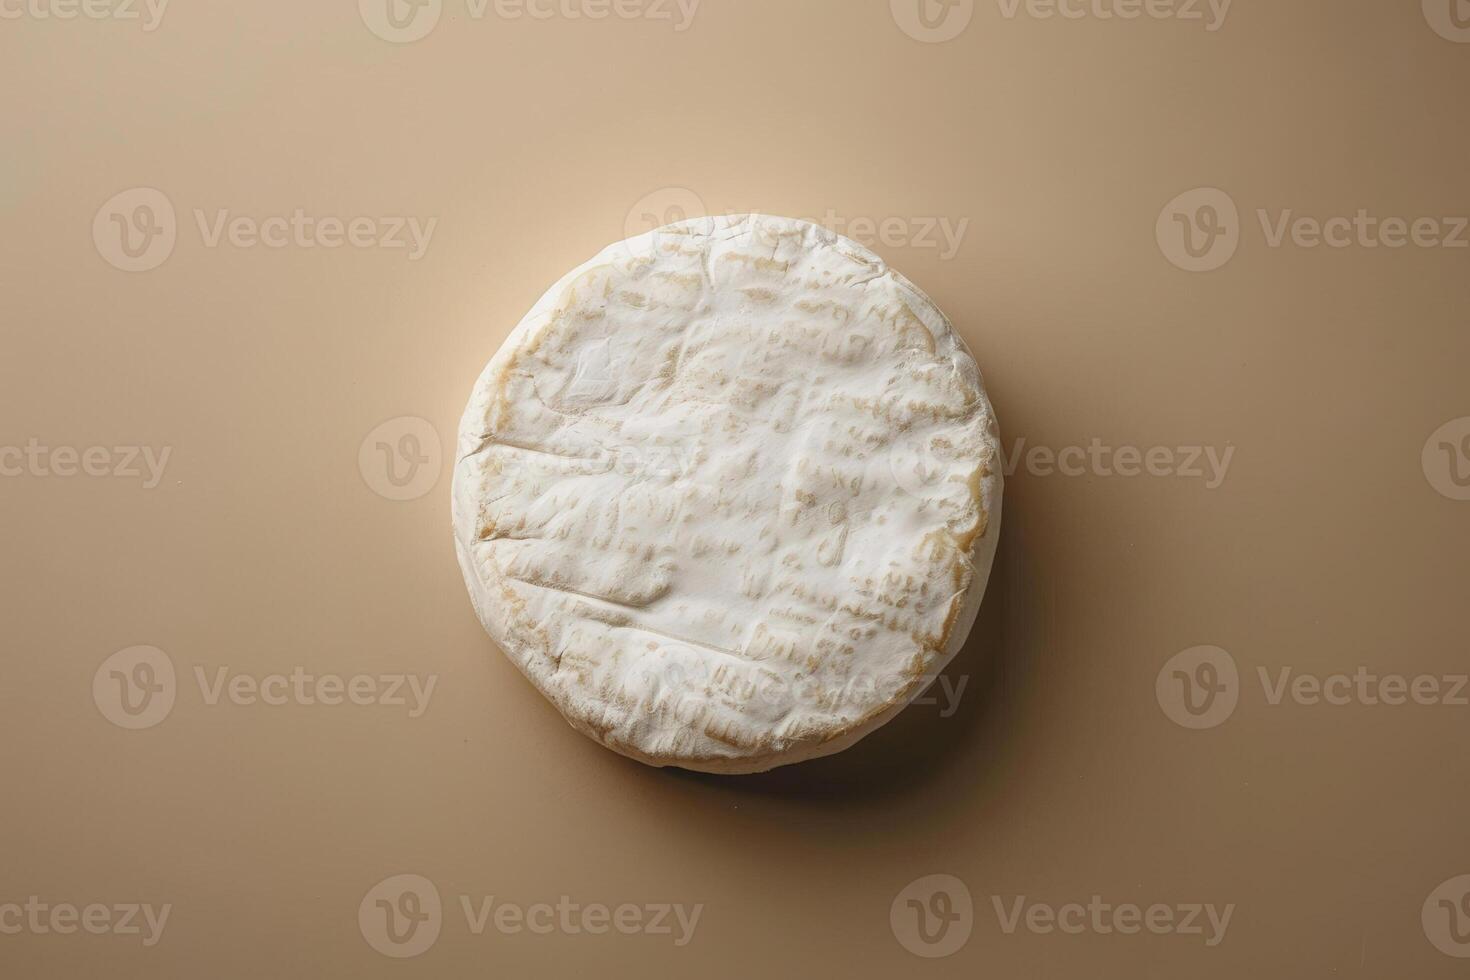 todo rueda de queso Brie queso metido centralmente en un sutil beige a crema degradado fondo, elegante y minimalista foto